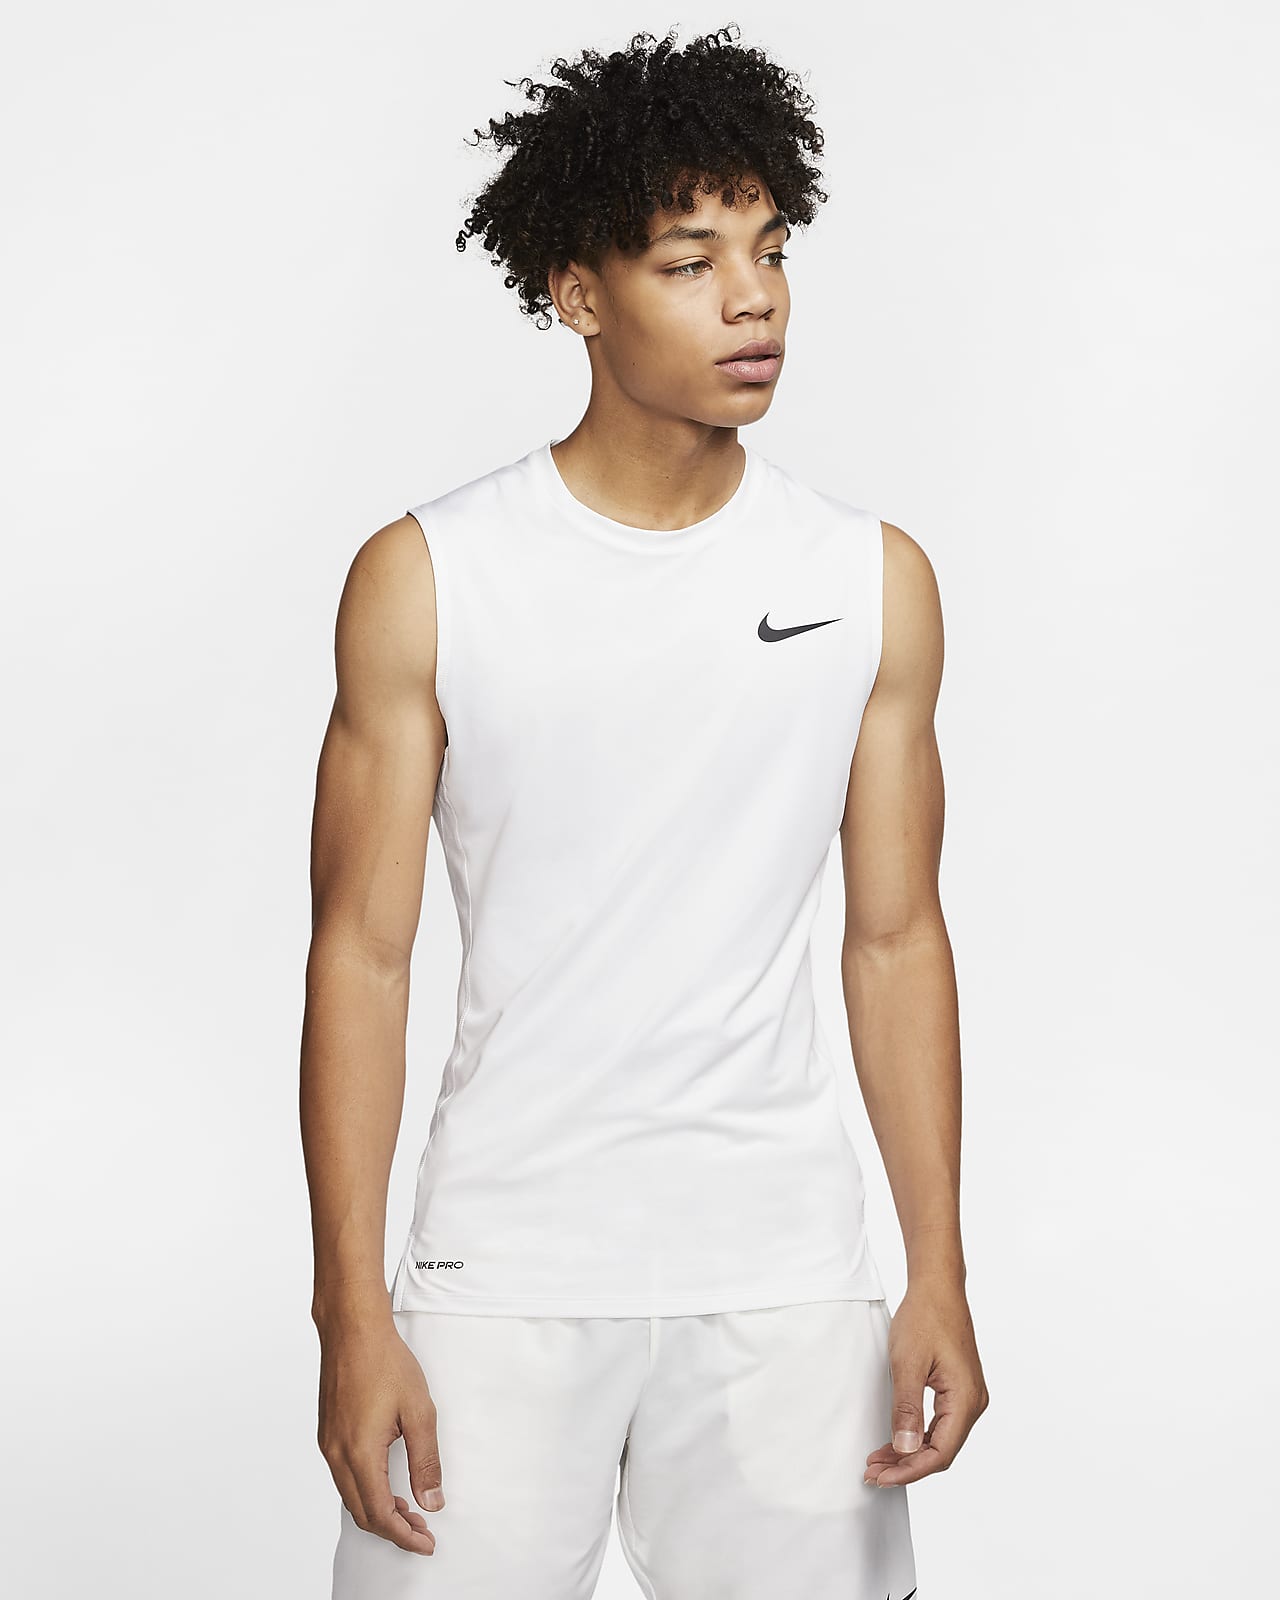 Nike Pro Men's Sleeveless Top. Nike.com